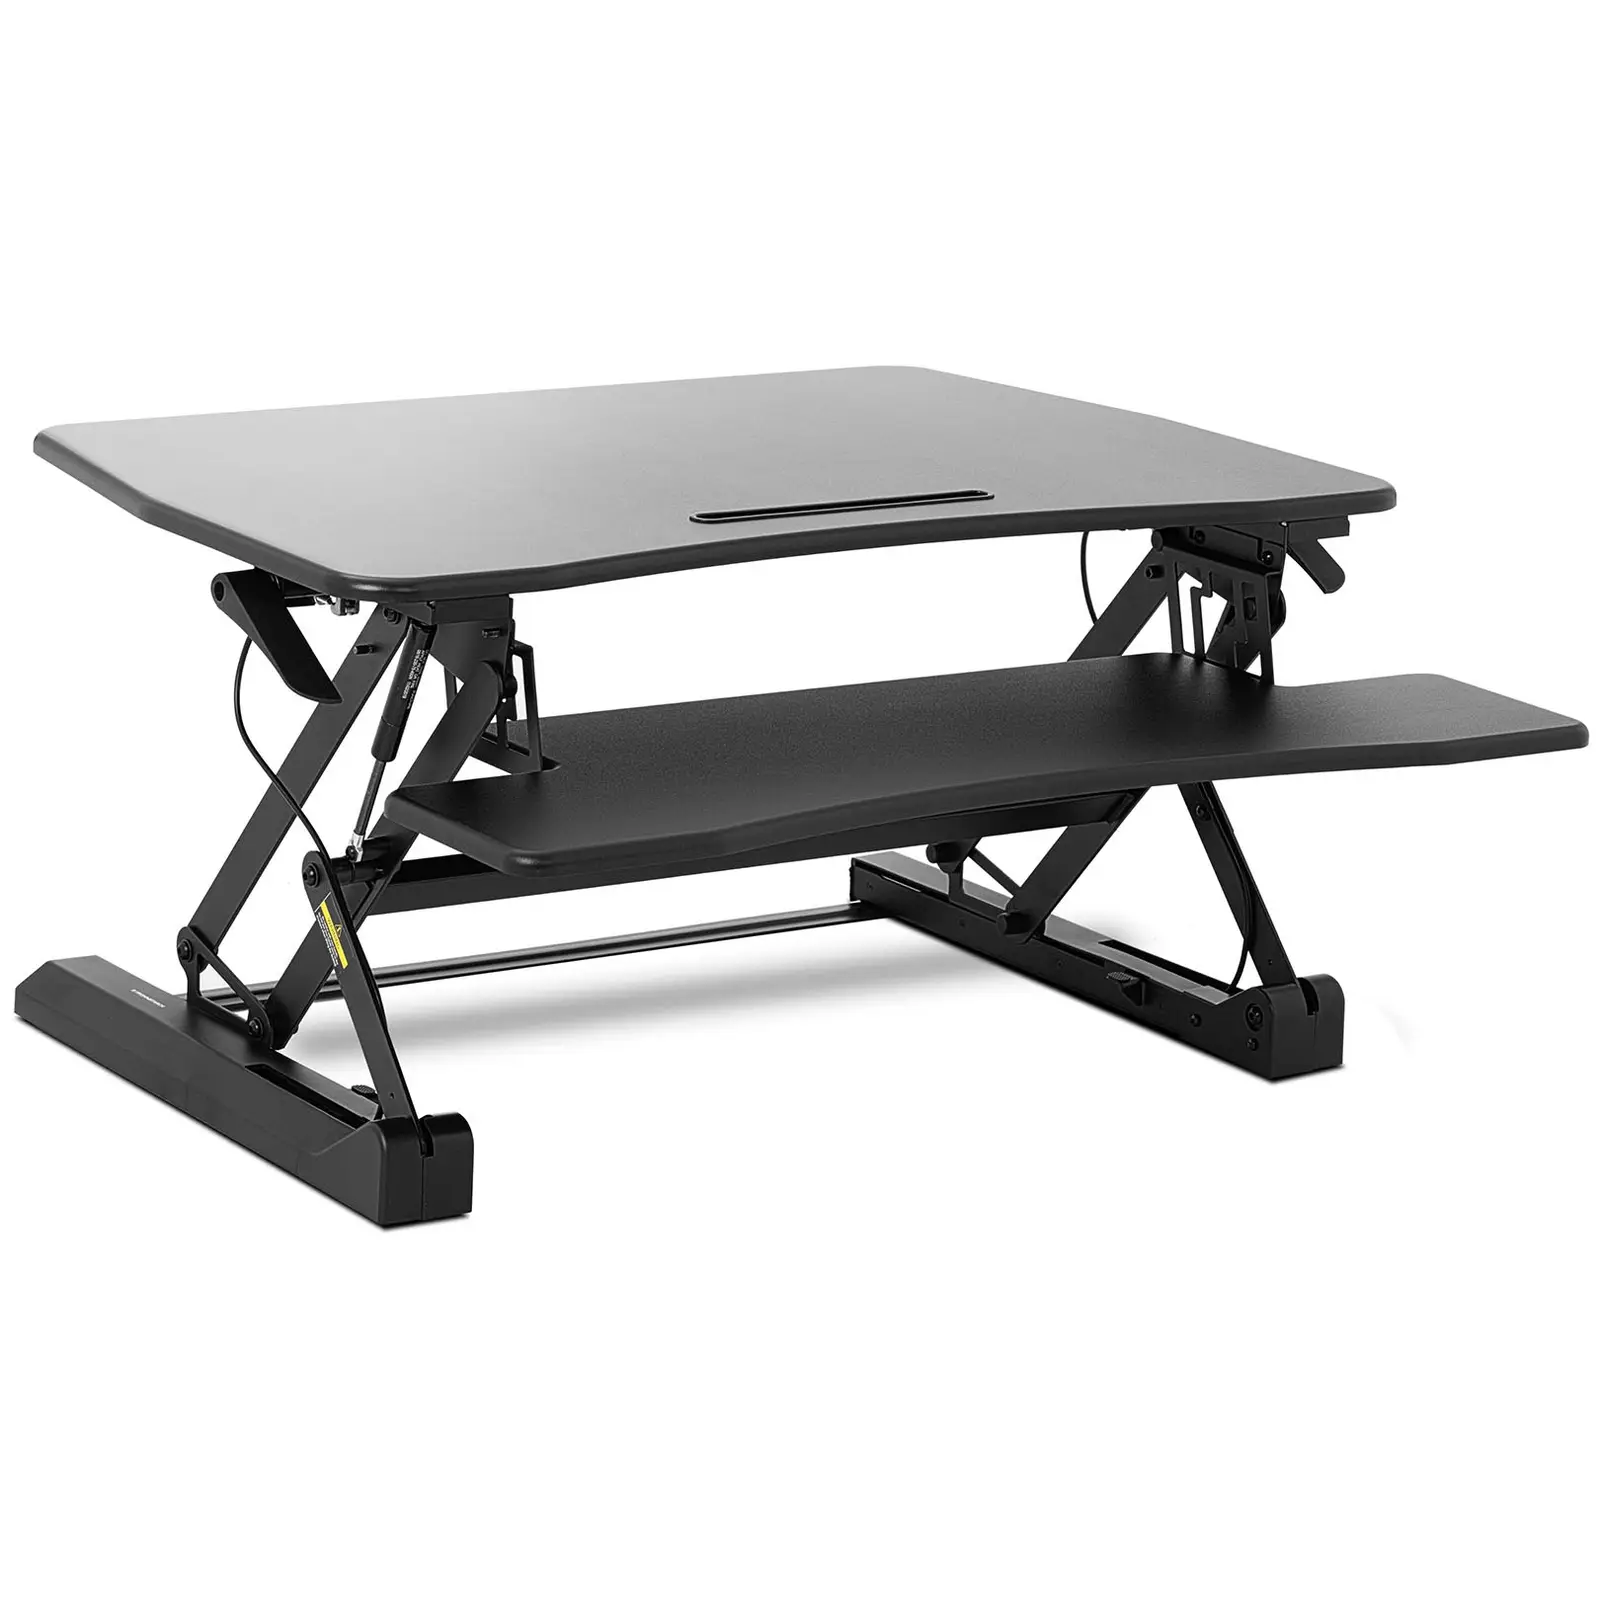 Sitt/stå skrivbordsställning - steglöst höjdjusterbar - 16,5 till 41,5 cm